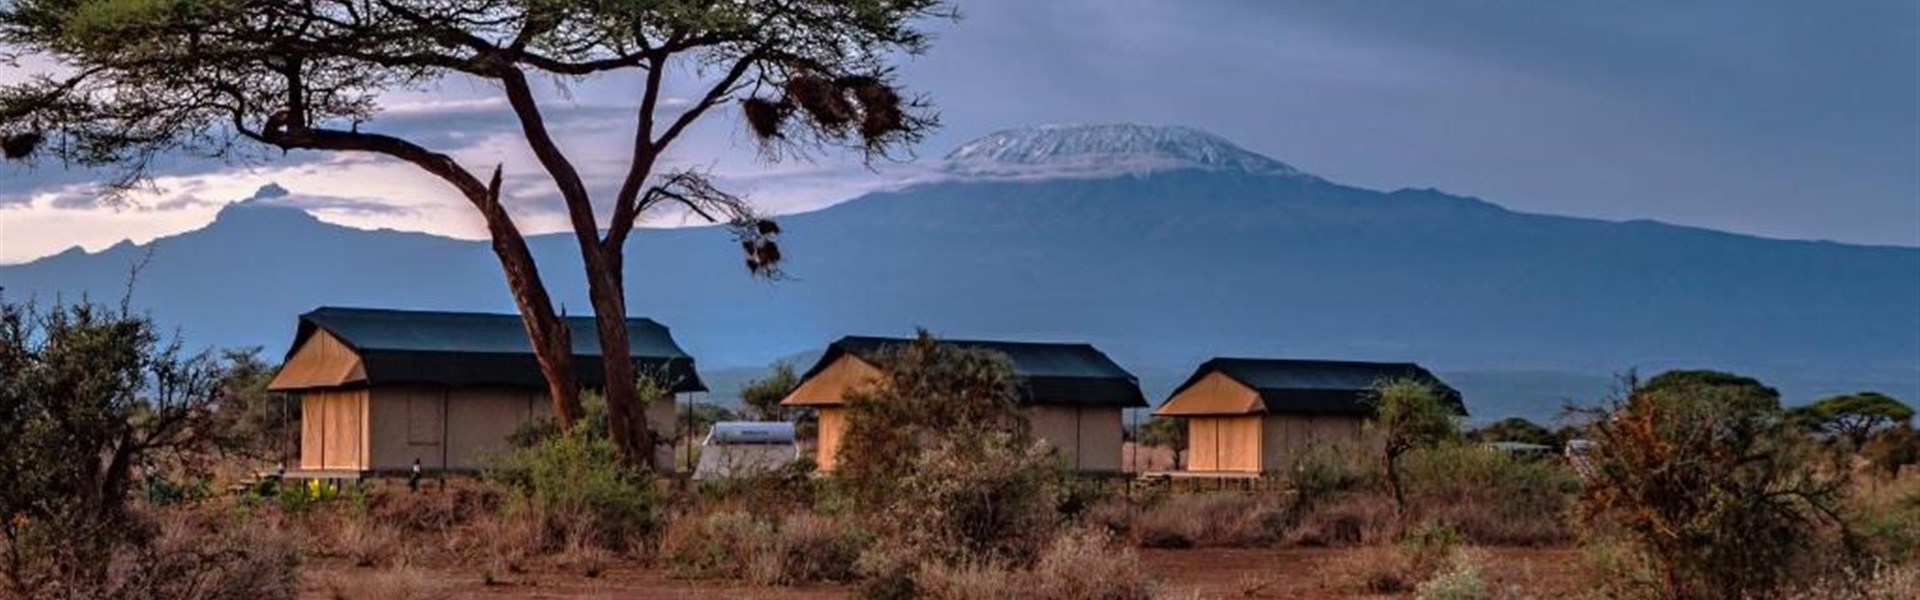 Marco Polo - Tulia Amboseli Safari Camp - 4* - 